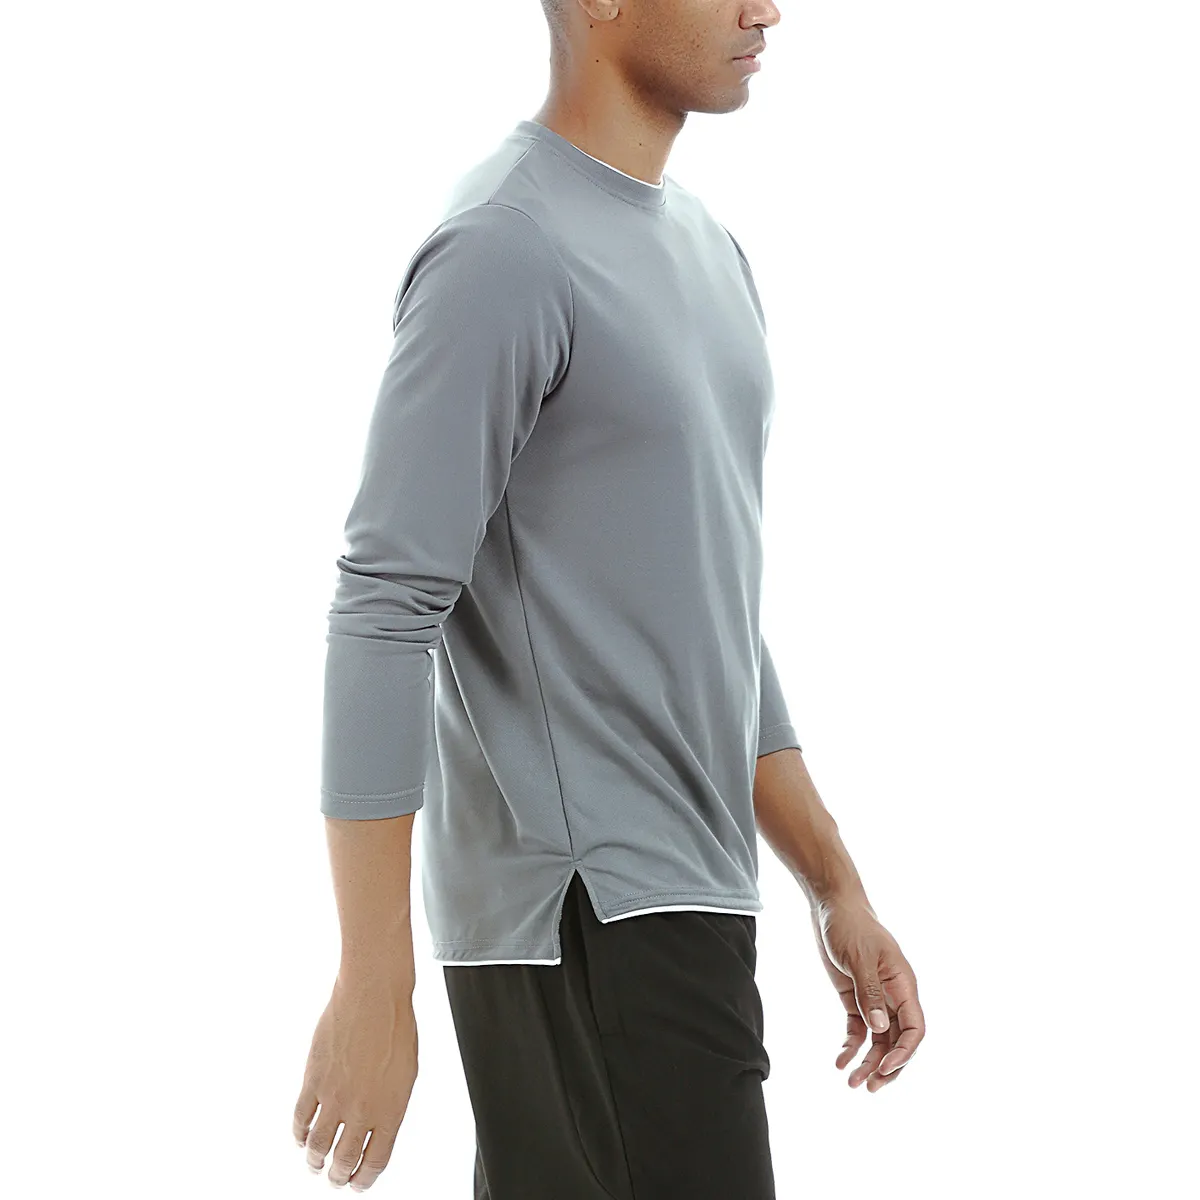 맞춤 개인 상표 겨울 훈련 러닝 착용 남성 긴 소매 피트니스 의류 플러스 사이즈 스포츠 셔츠